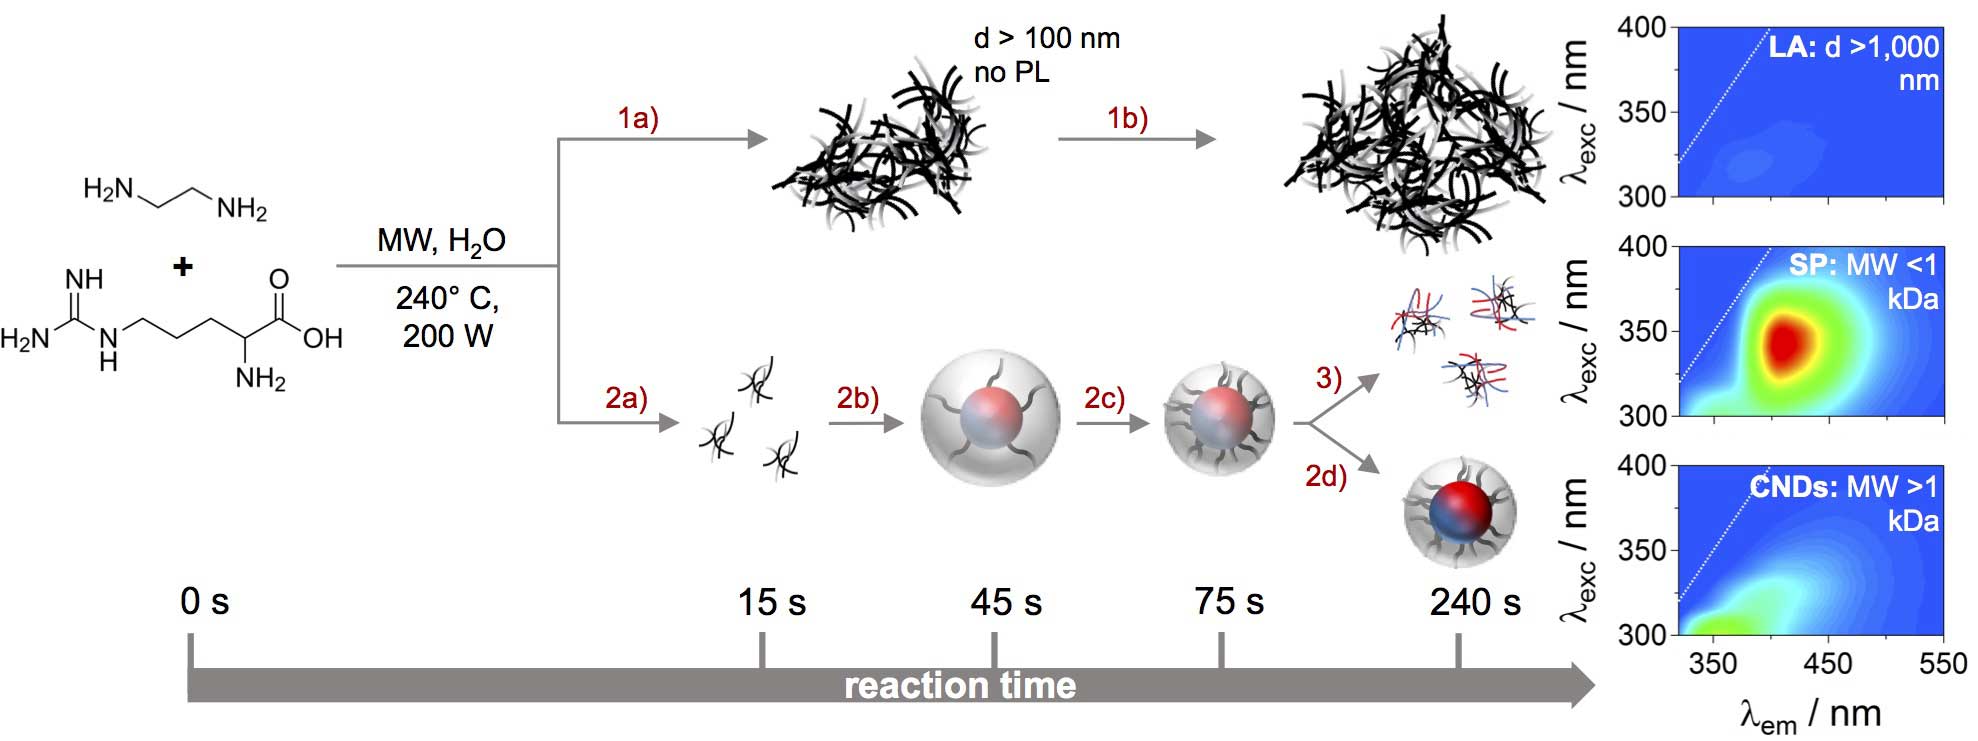 schema reazione nanodots nanoparticelle Università di Trieste